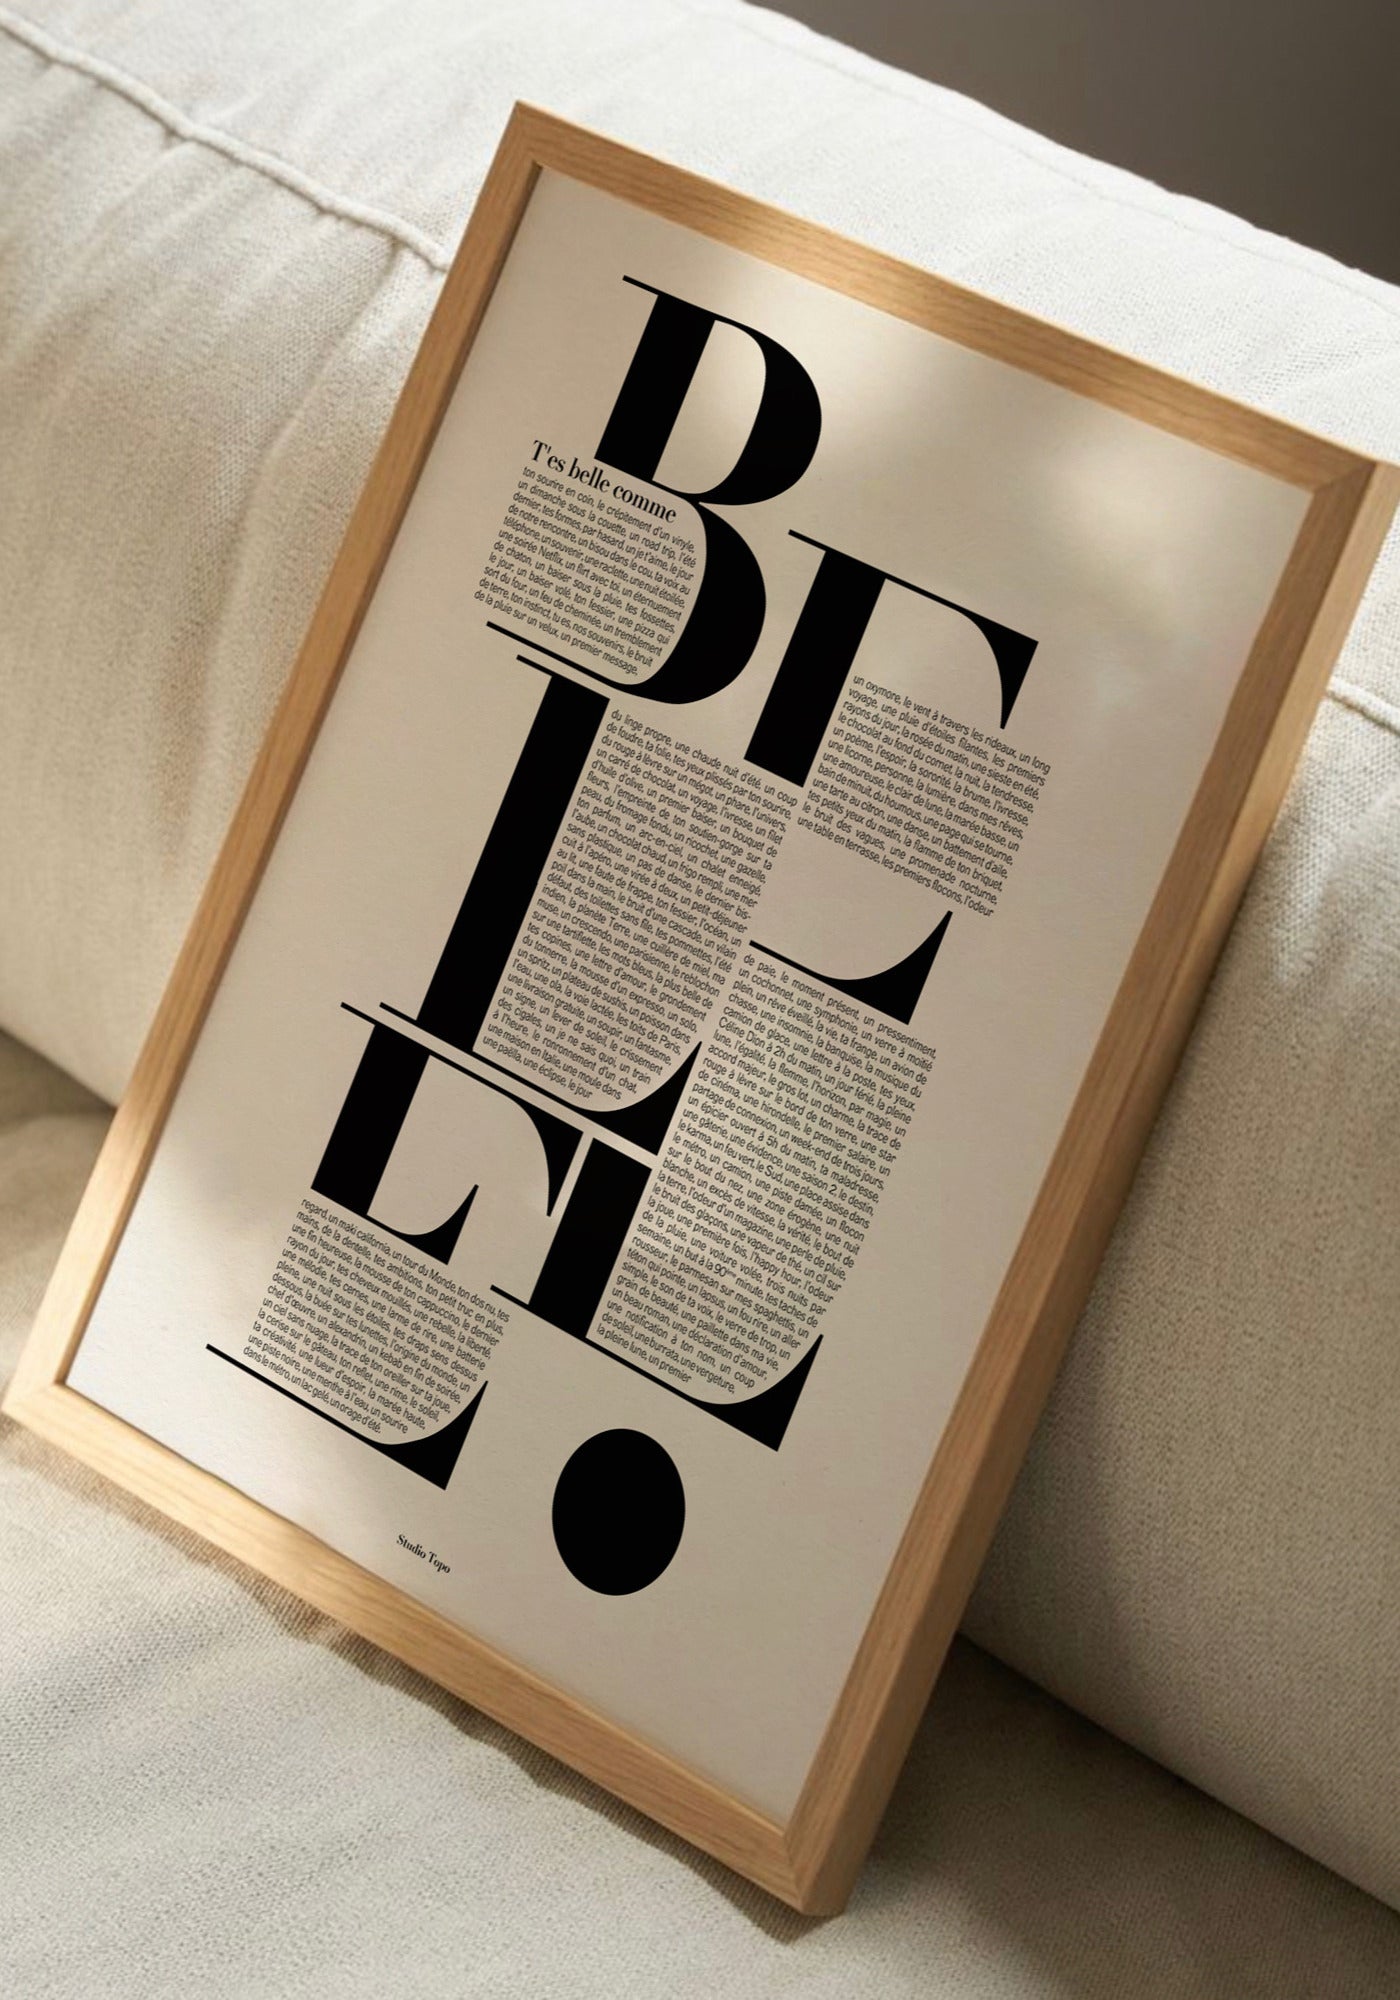 L'affiche typographique "T'es belle comme" en 30x40 cm de chez Studio Topo posée sur un canapé